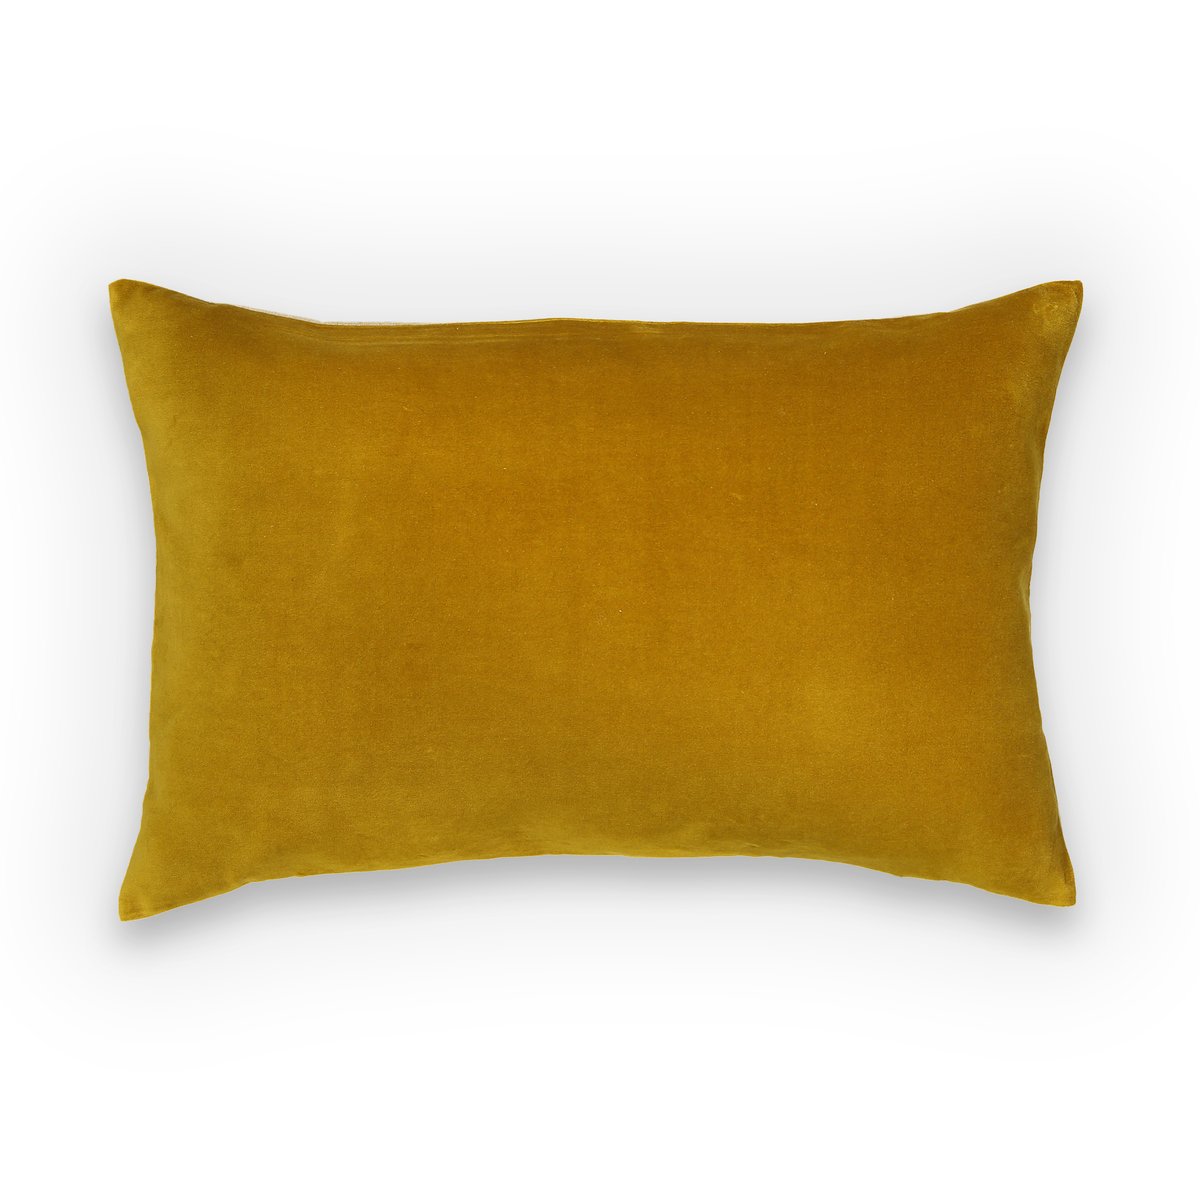 Чехол LaRedoute На подушку из велюра Velvet 60 x 40 см желтый, размер 60 x 40 см - фото 1